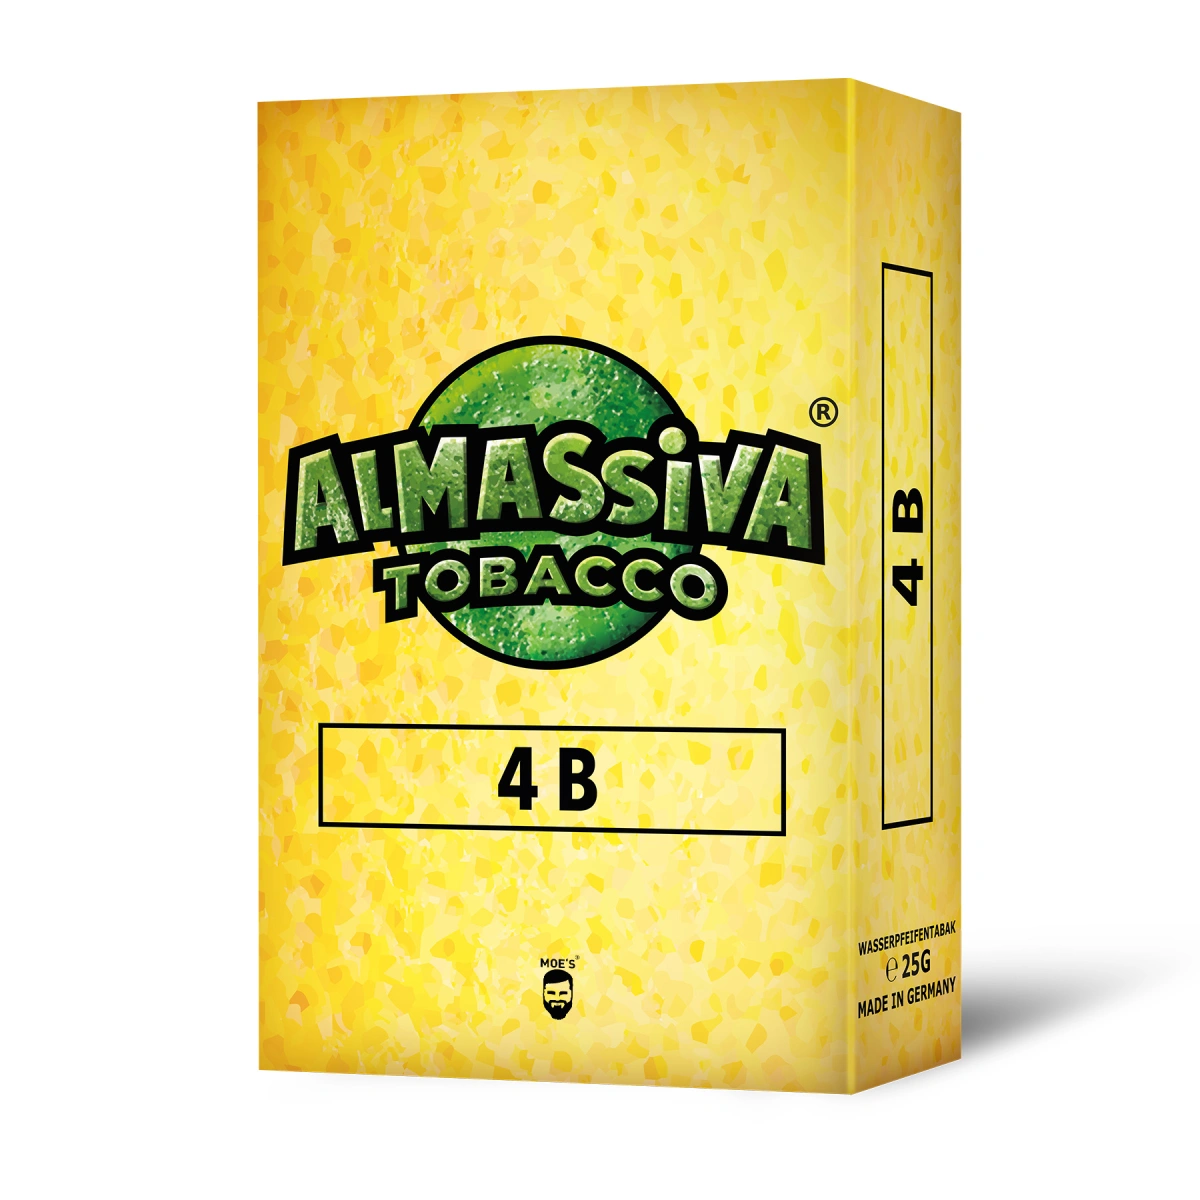 Al Massiva Tobacco 25g 4B Eine Familie